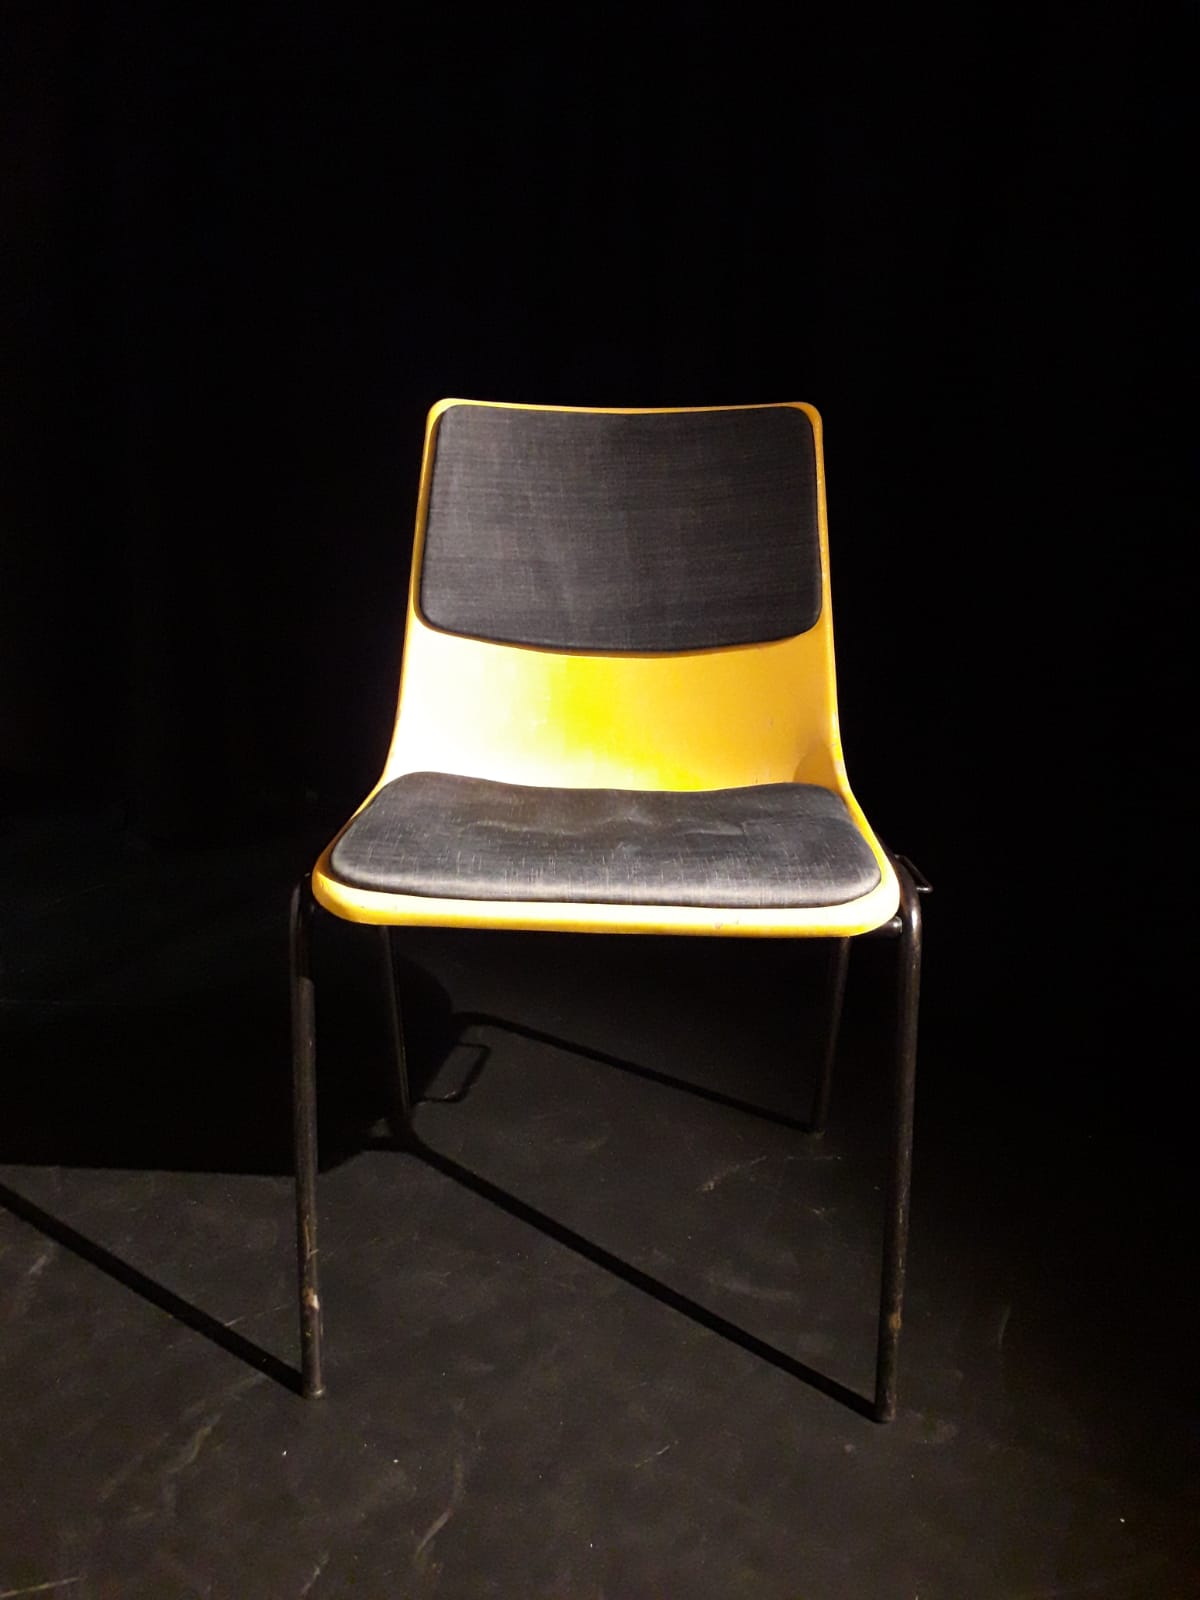 gespendet werden 63x gepolsterte, stapelbare Stühle in Berlin